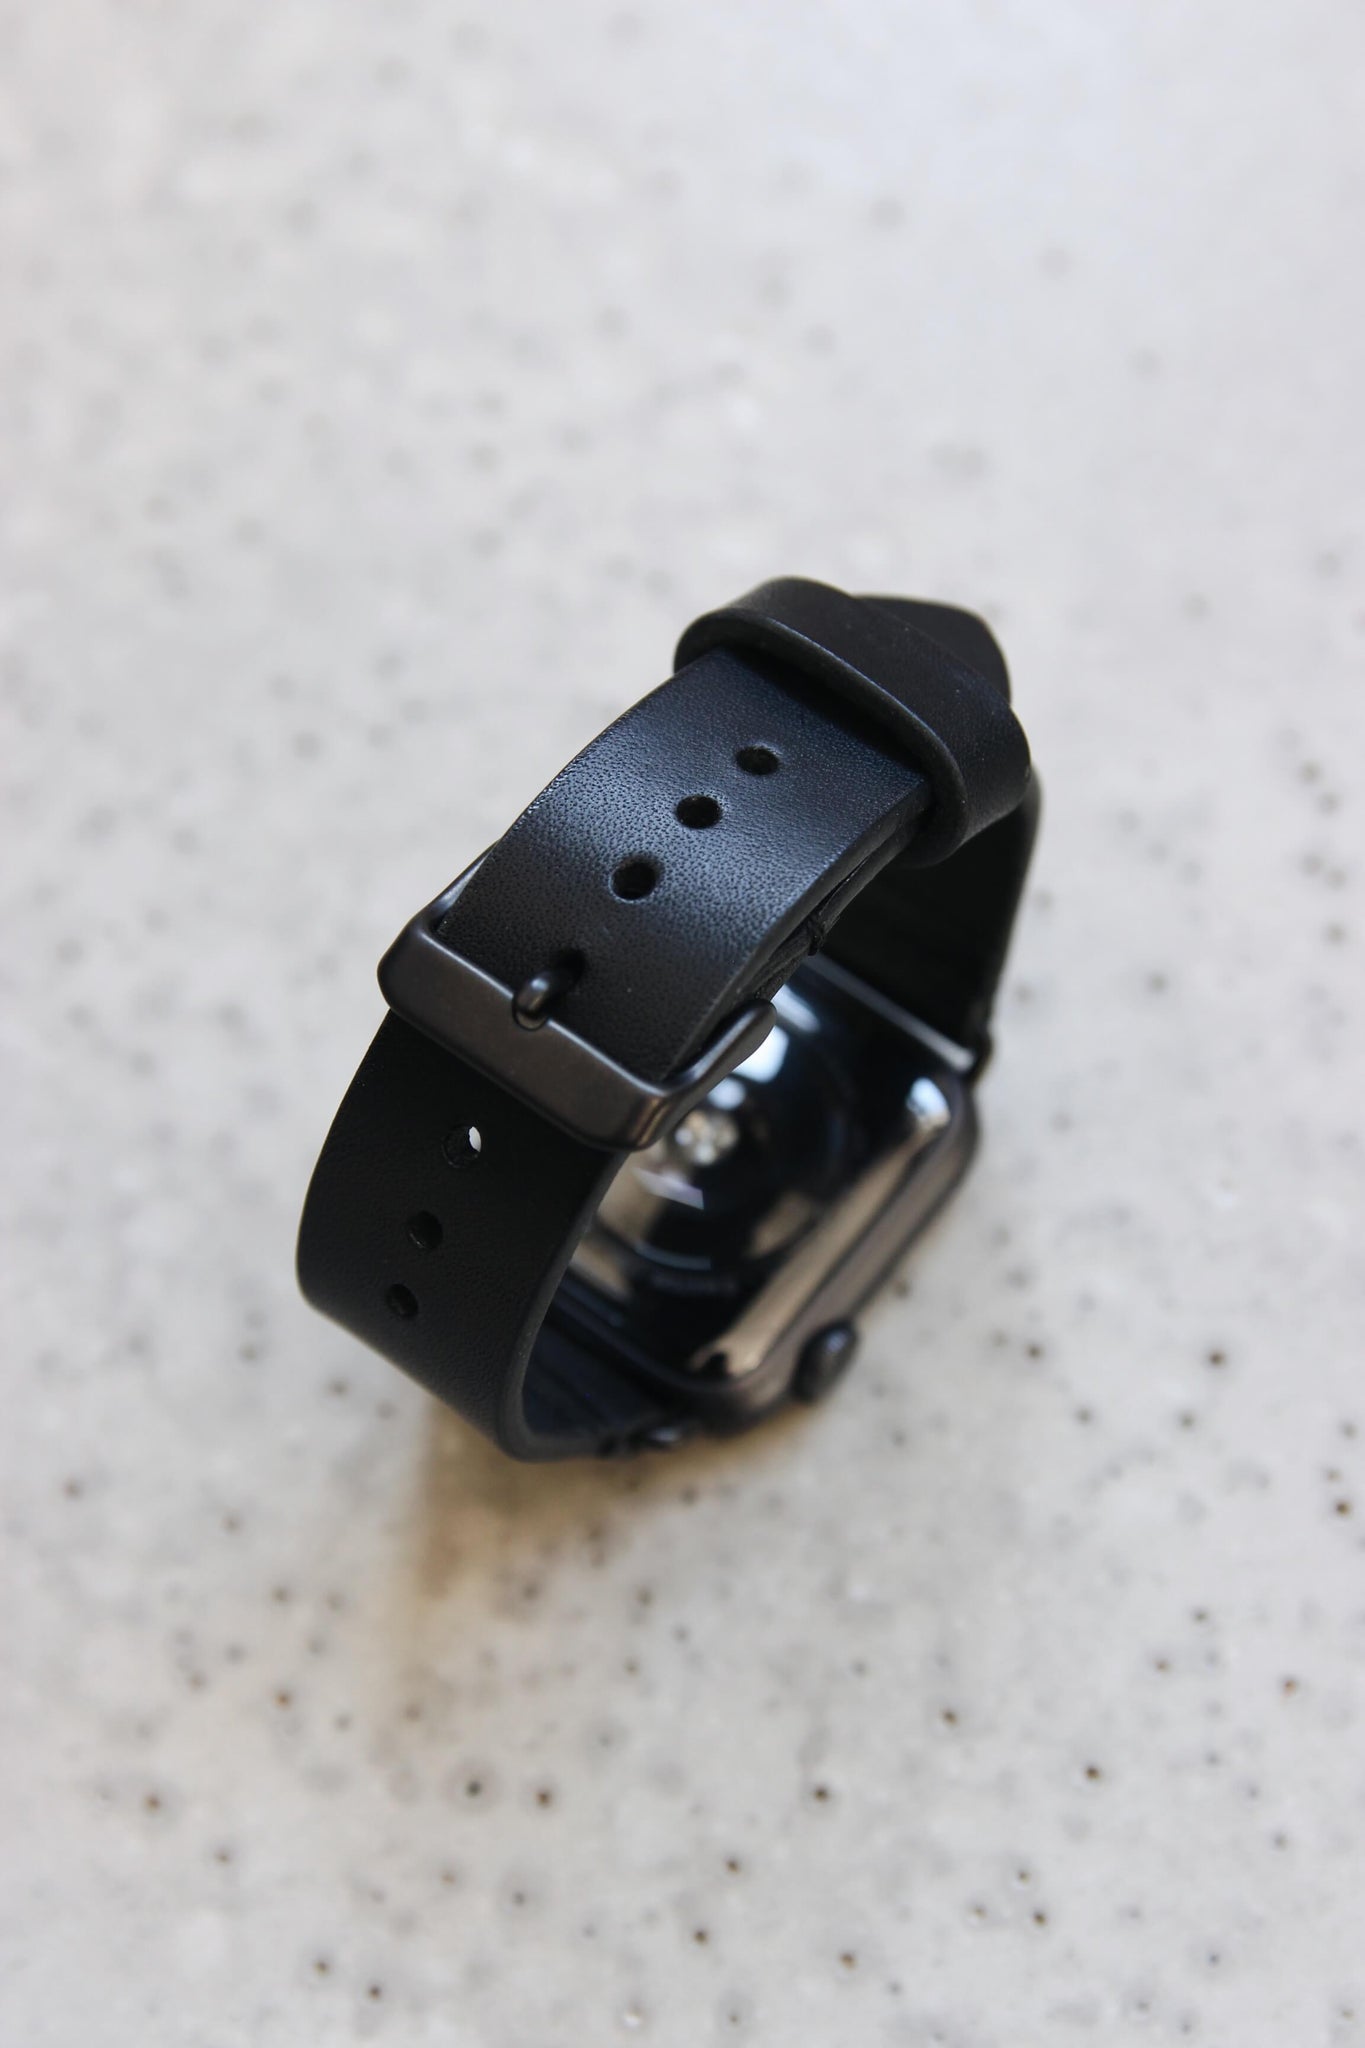 Eine Apple Watch mit einem Lederband in Schwarz auf einem Betonboden stehend.